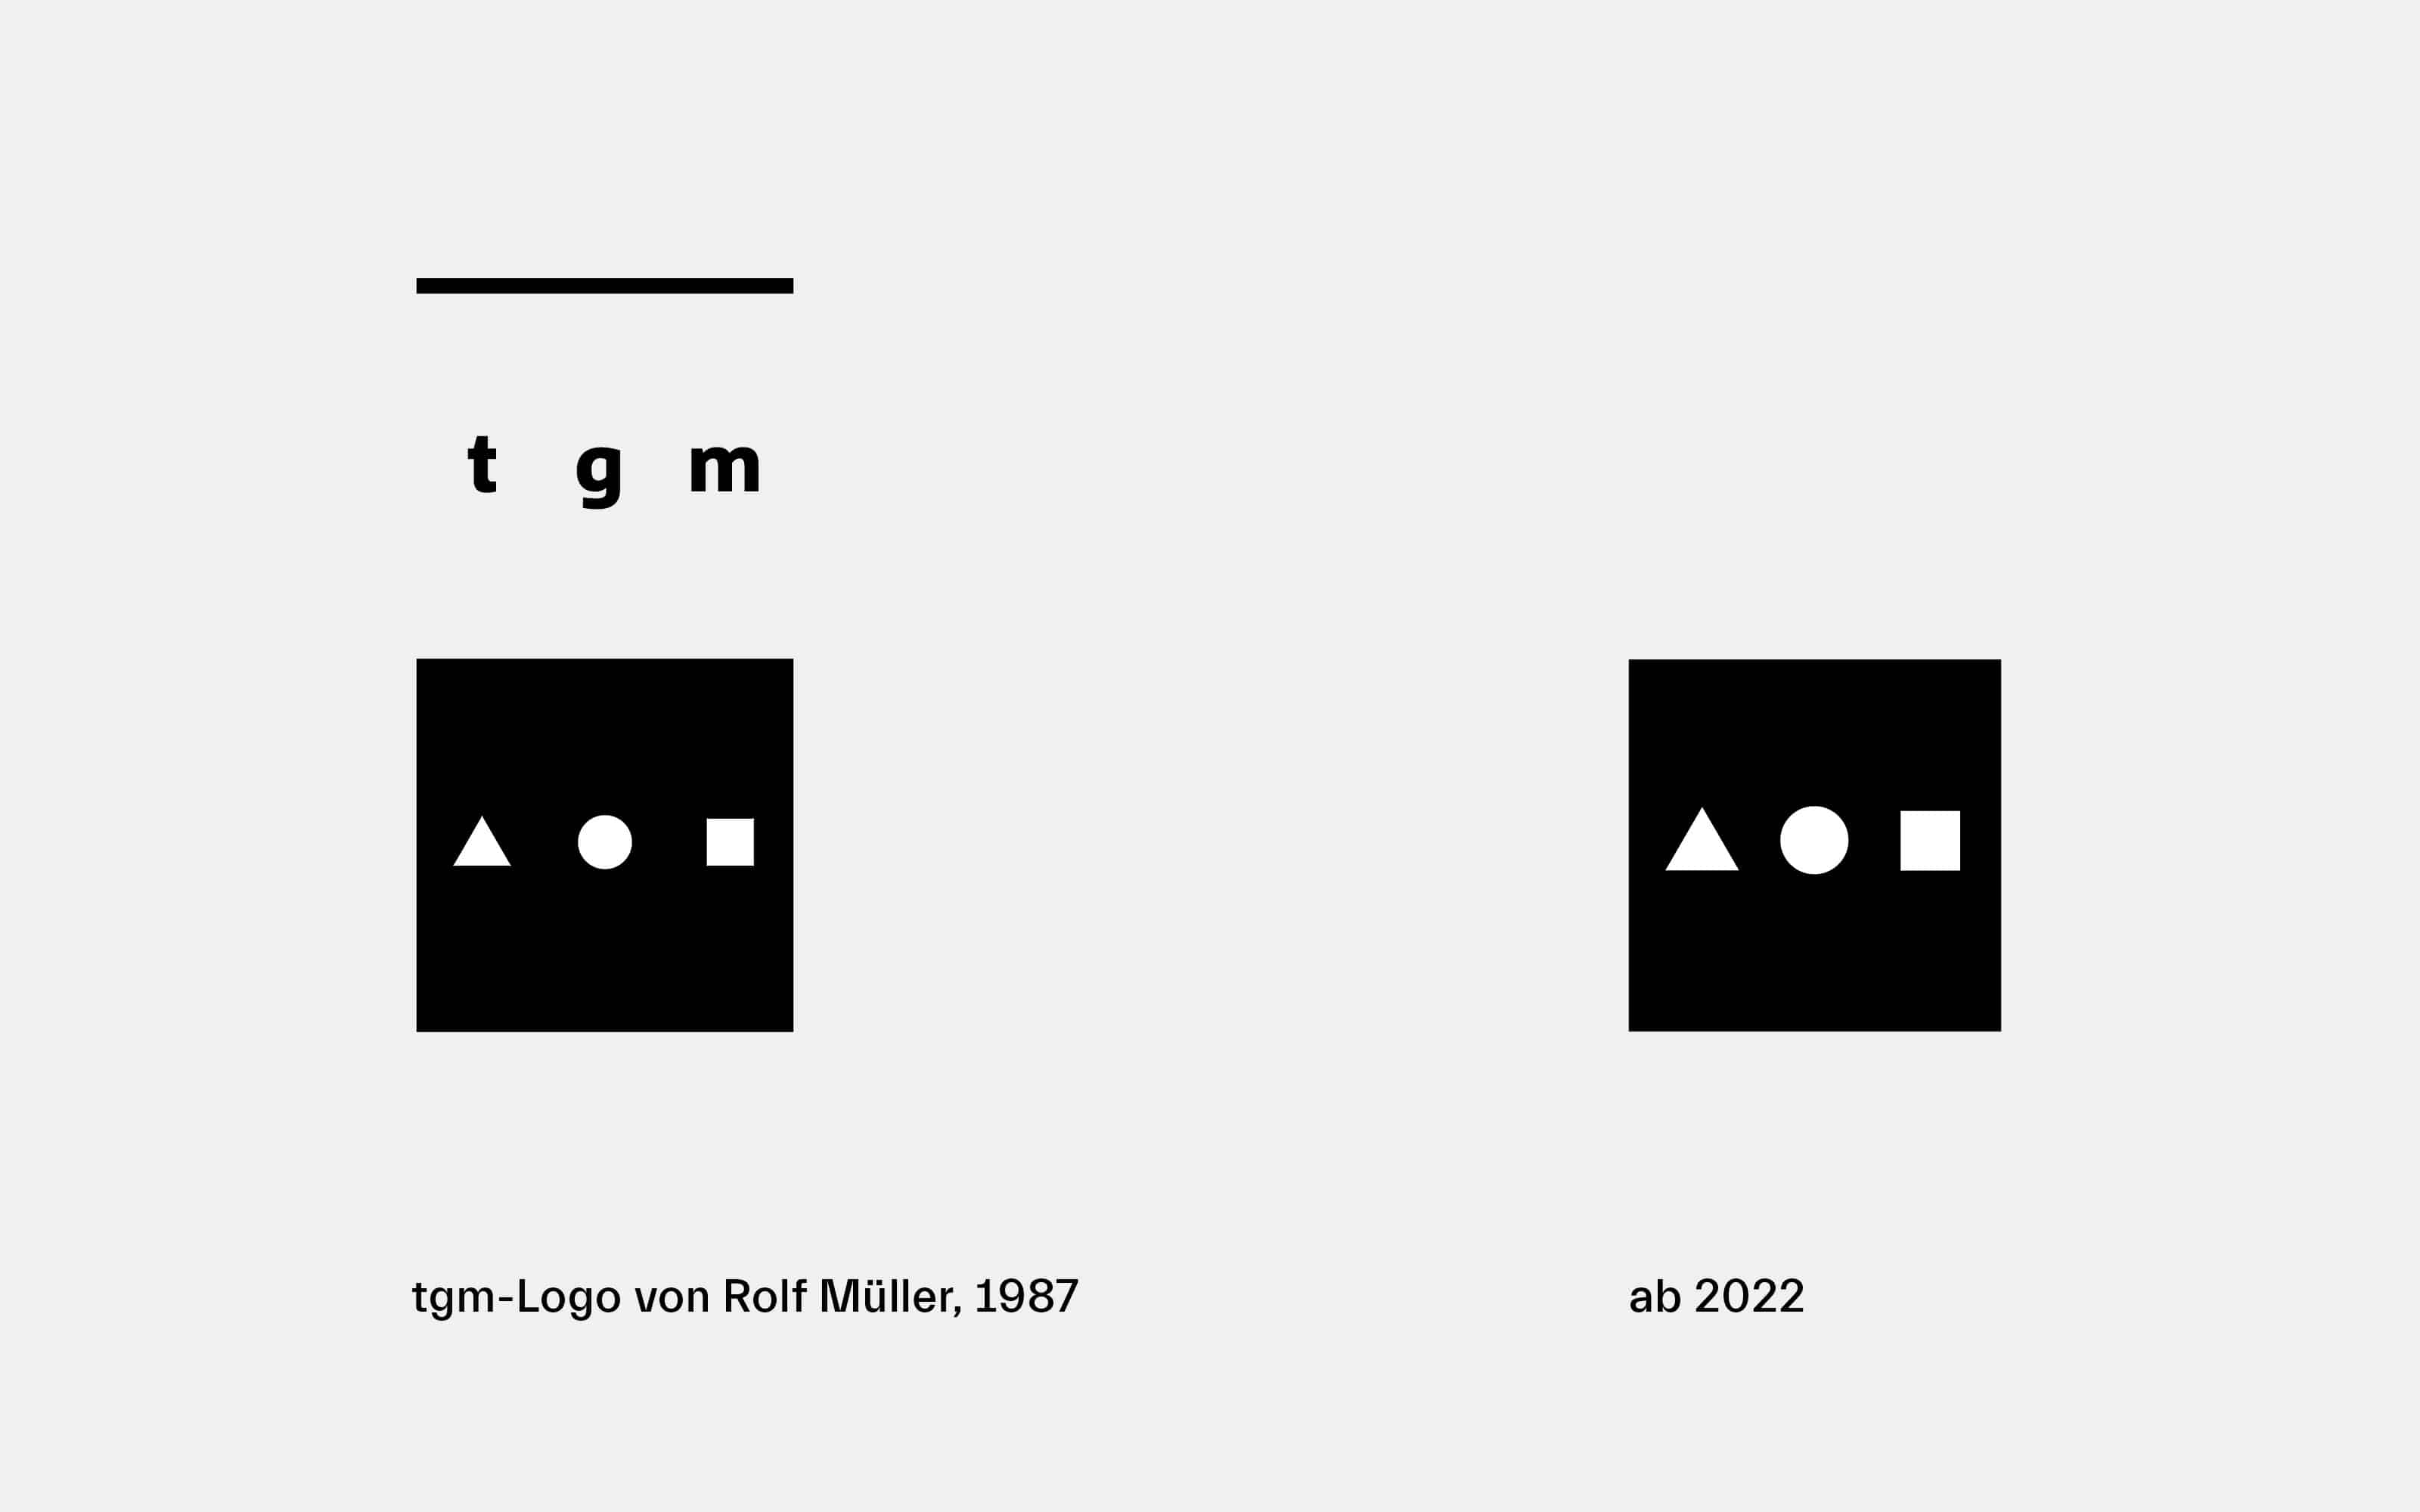 Das alte tkm Logo links mit größeren abständen zwischen den drei geometrischen formen innerhalb eines schwarzen Rechtecks